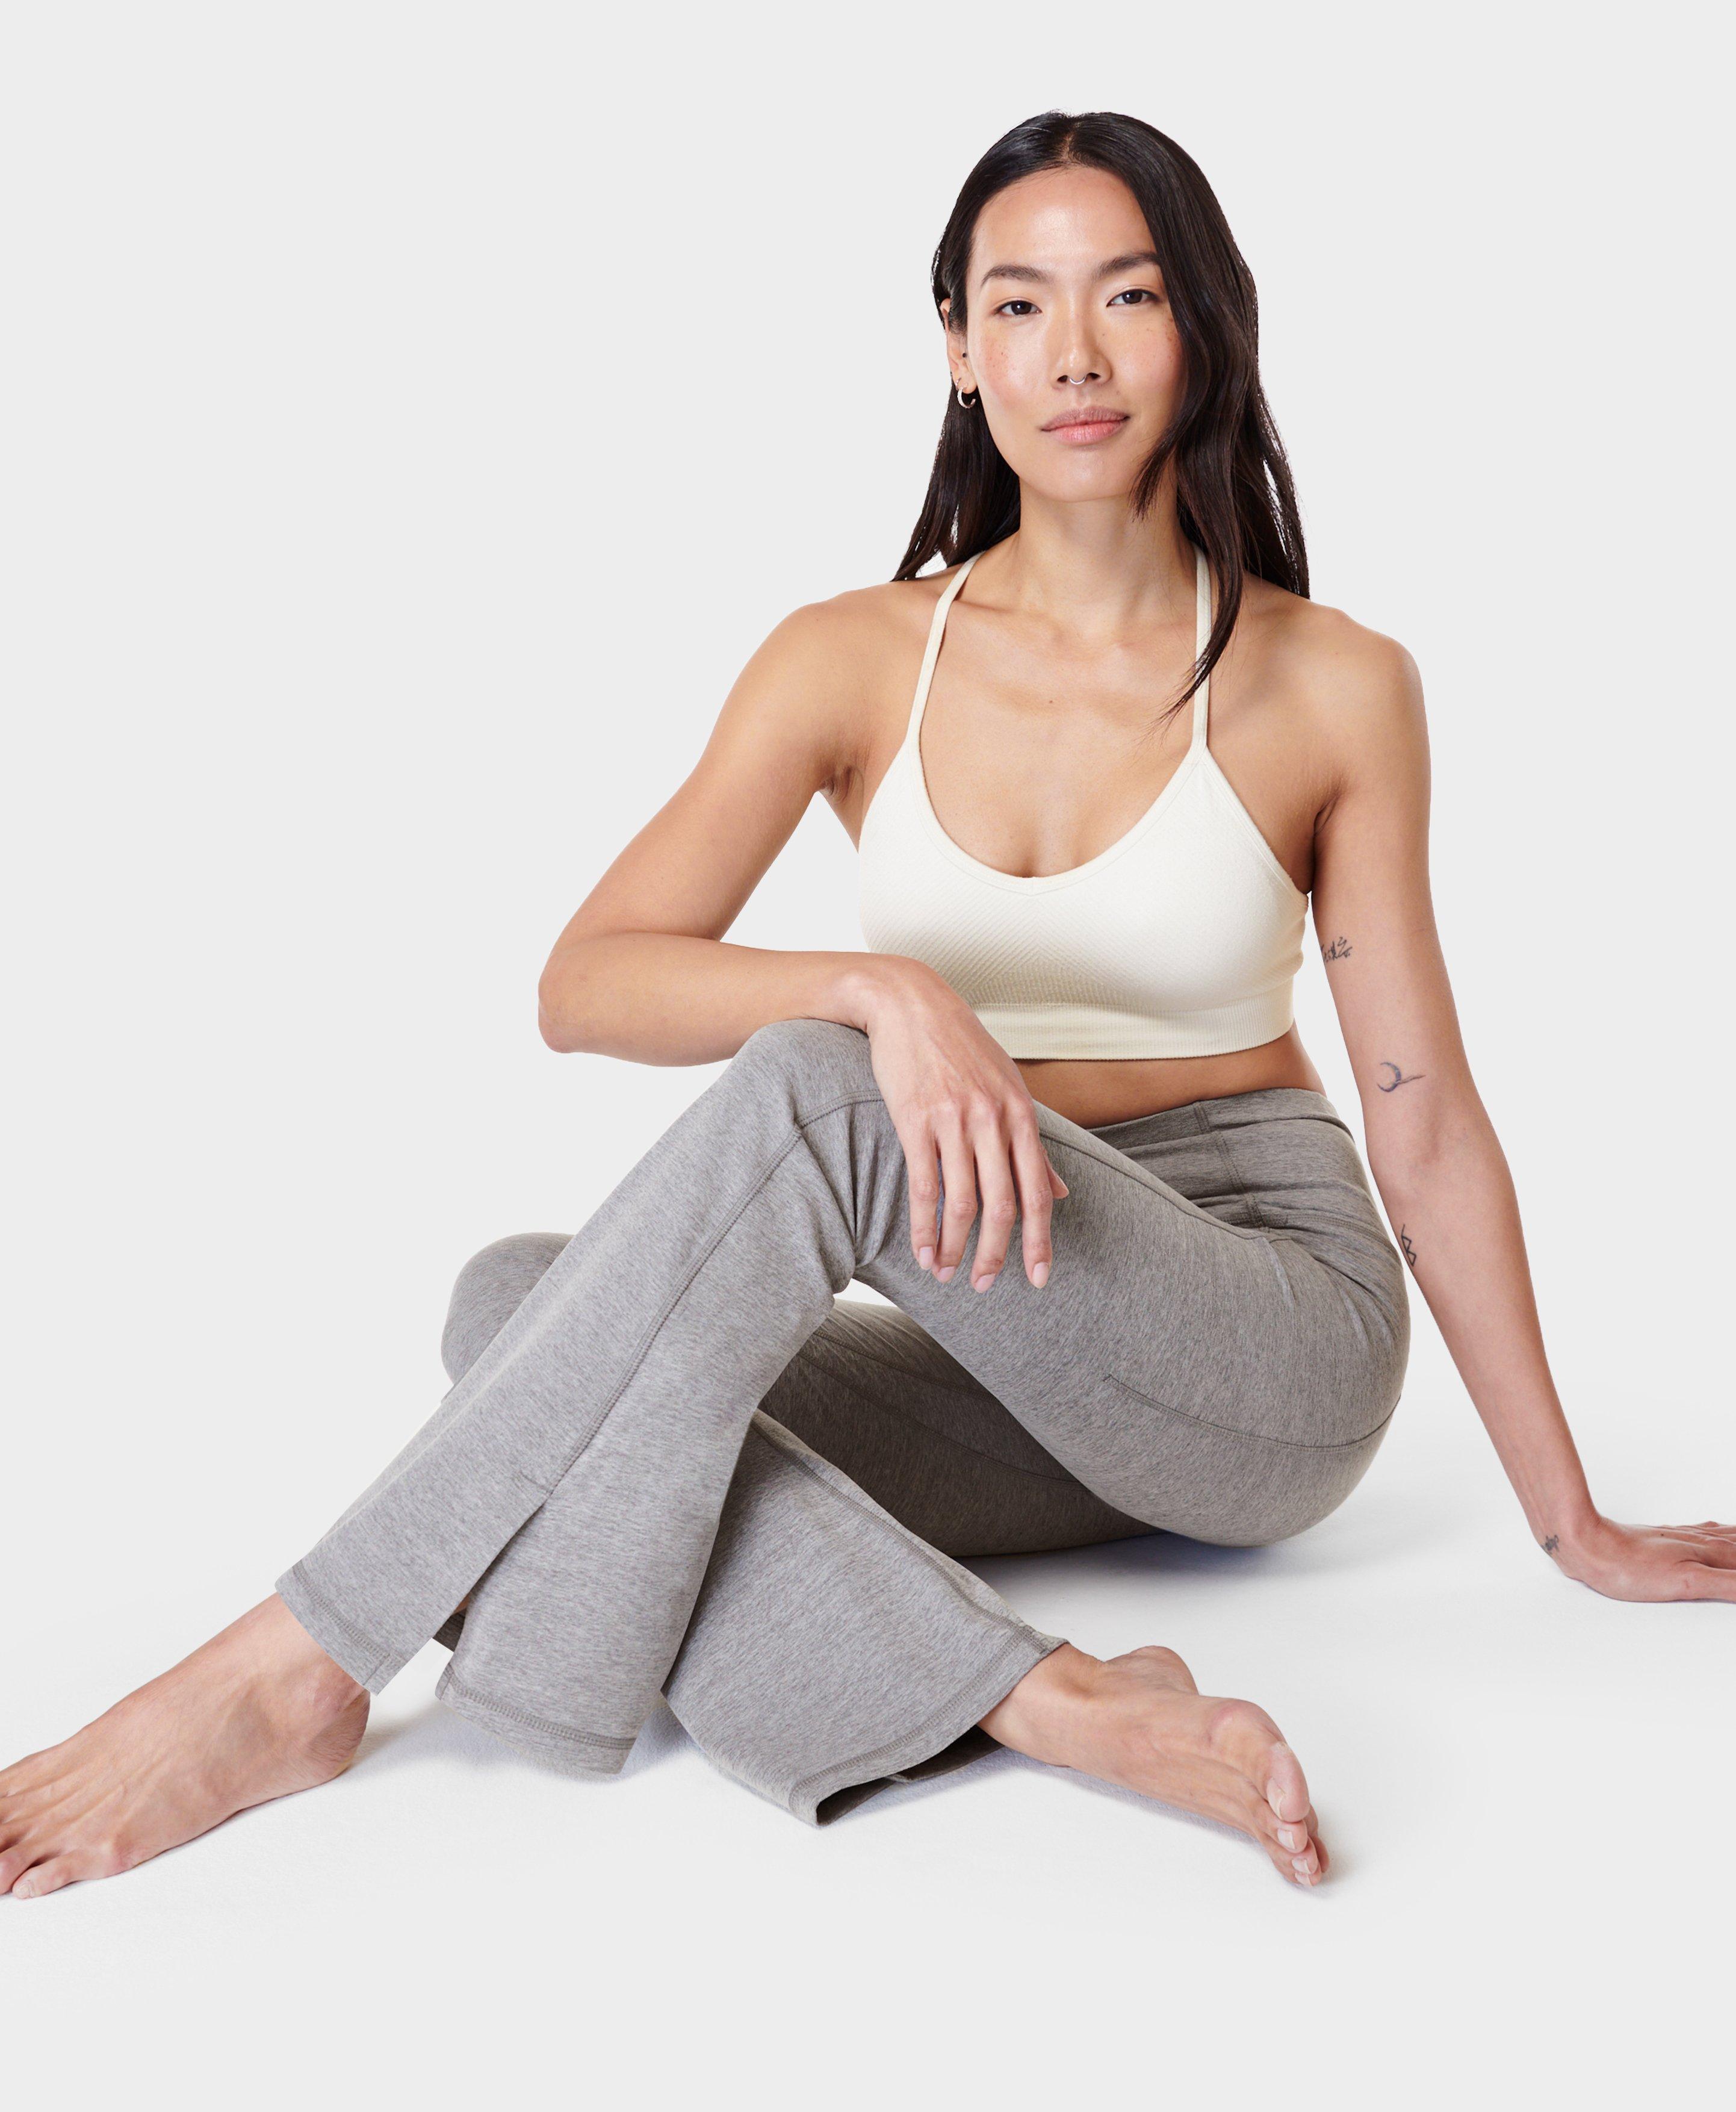 Super Soft Flare Yoga Pants - 32 INSEAM, Women's Trousers & Yoga Pants